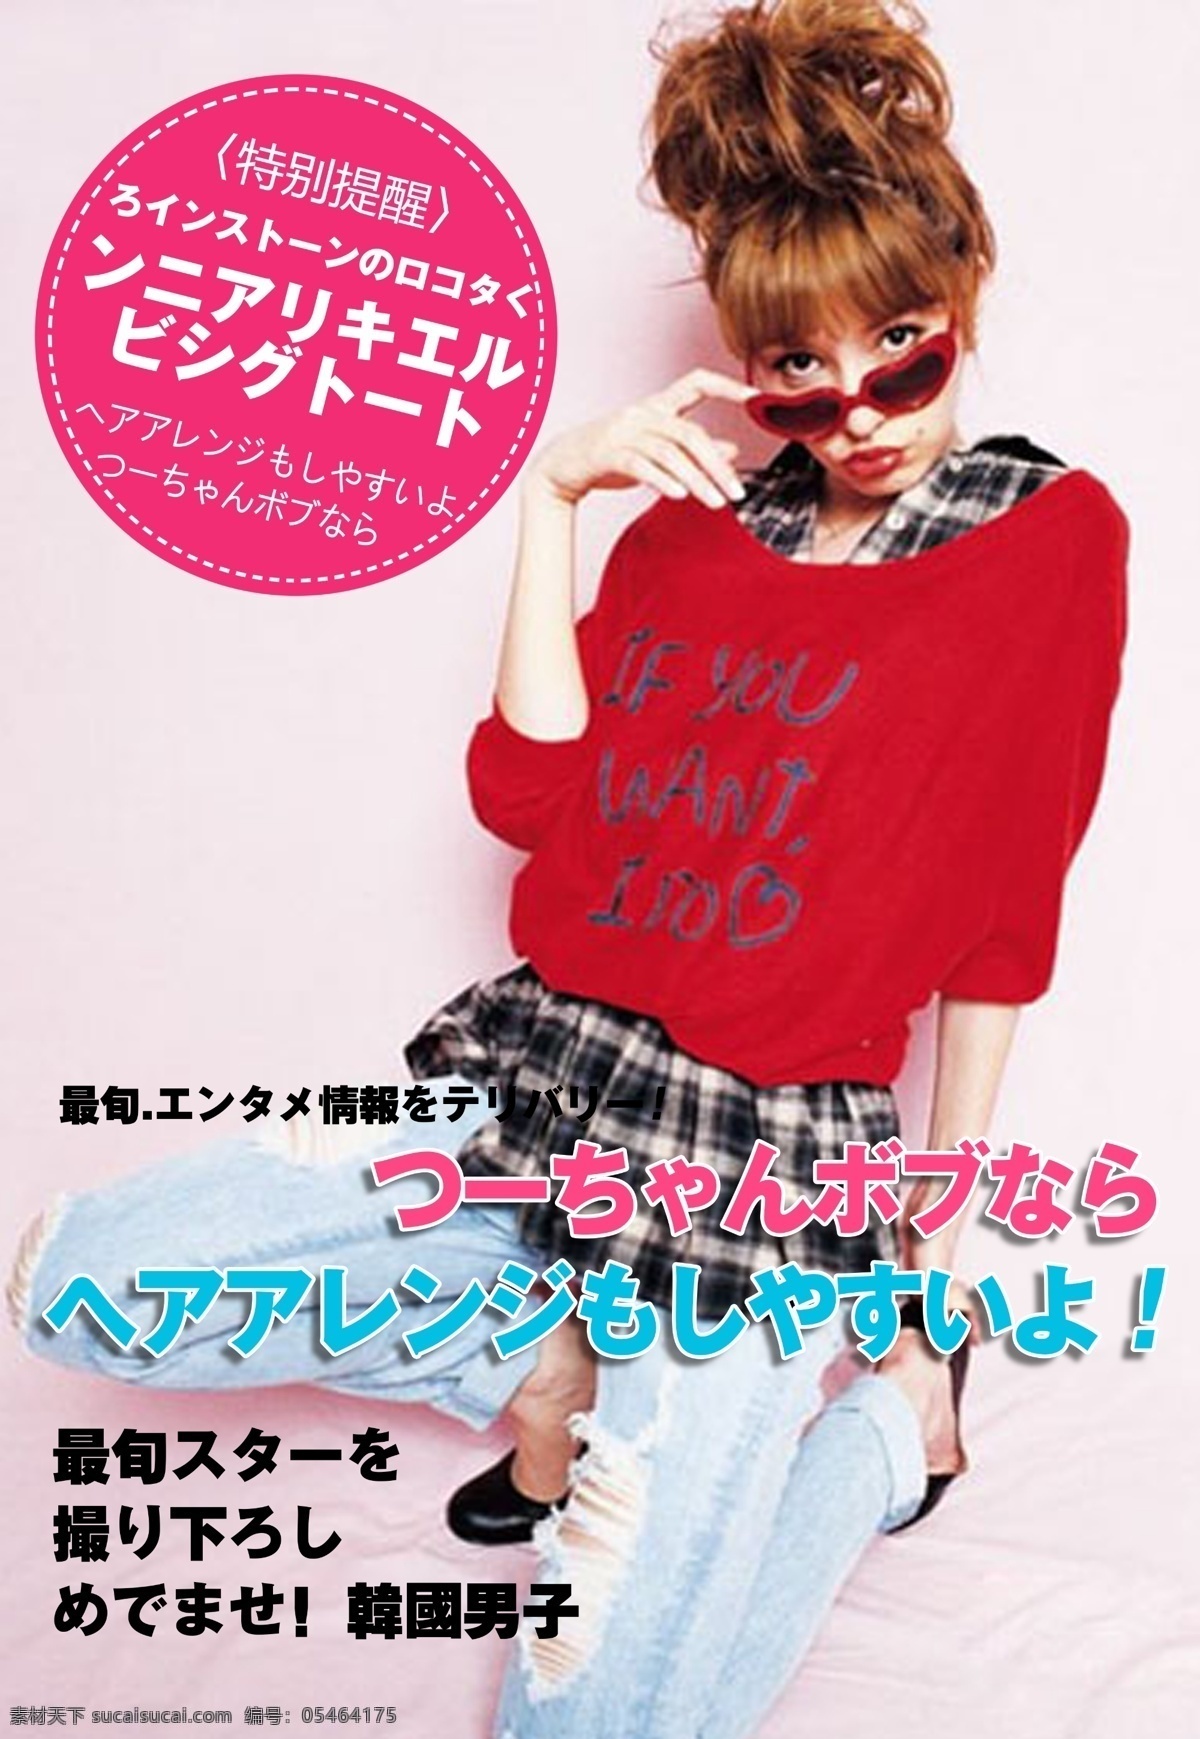 日 系 杂志 封面设计 日系杂志 恋爱 封面素材 模板设计 美女杂志 白色